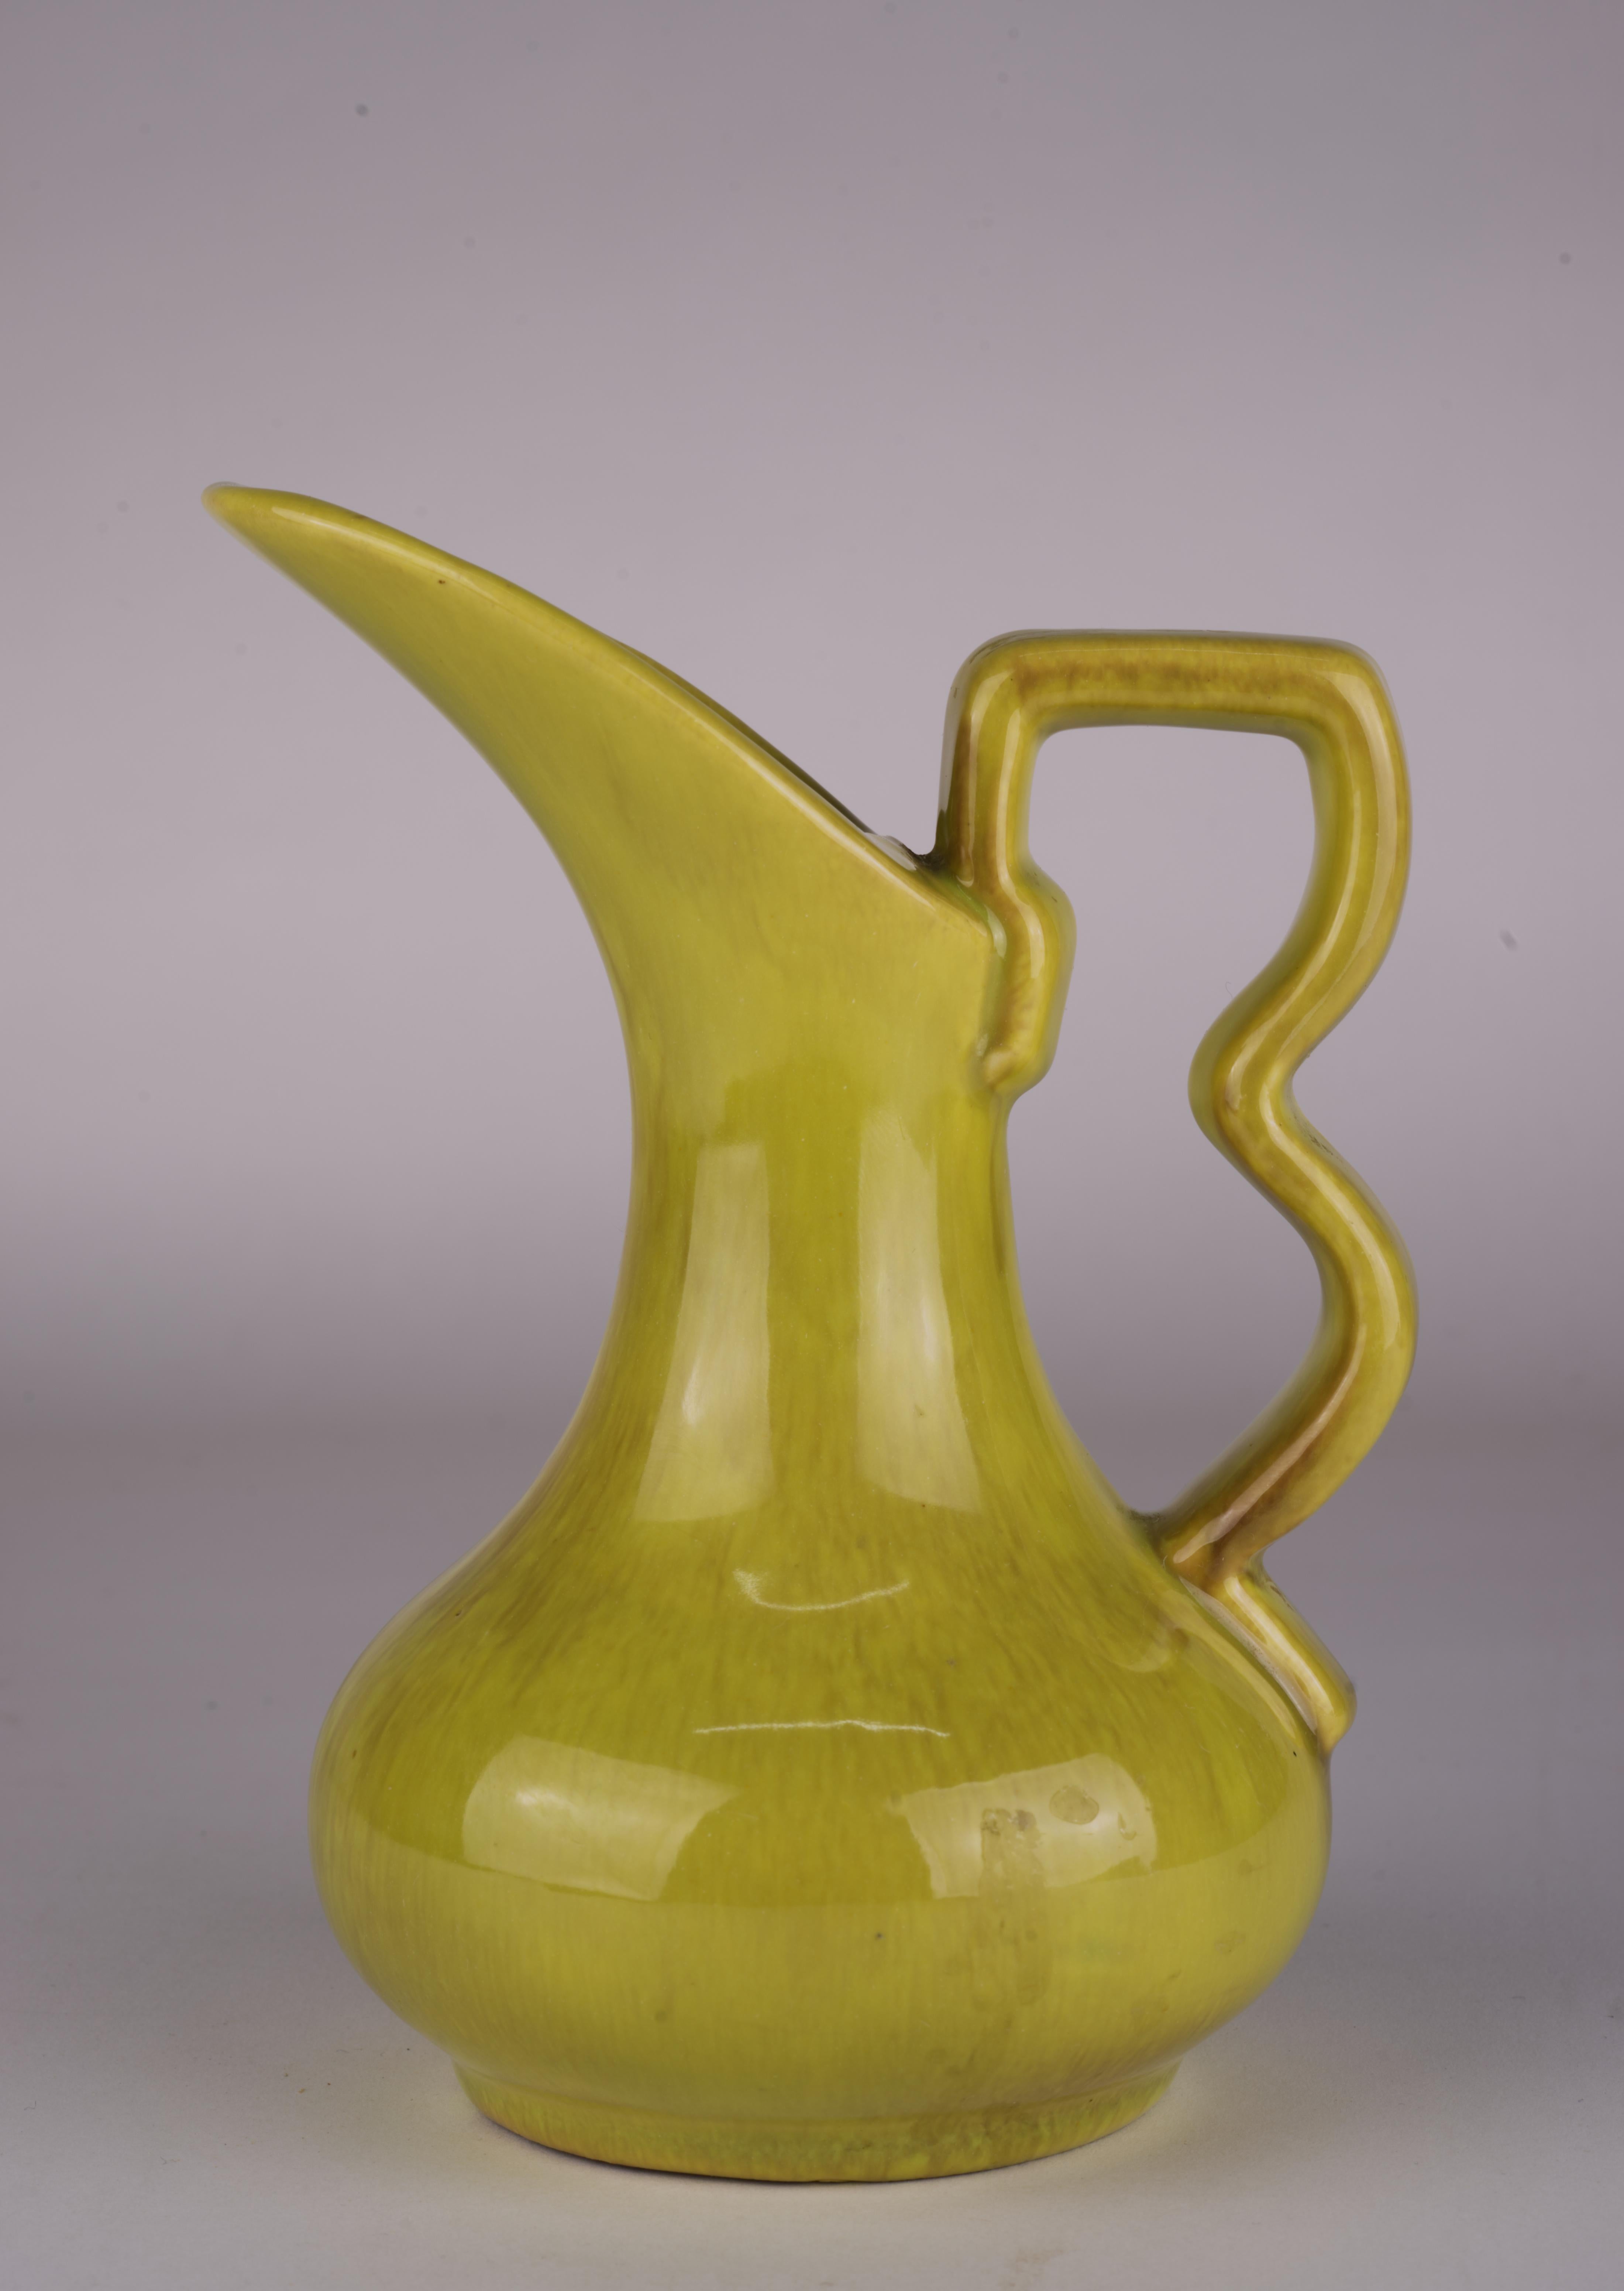 Gonder Pottery Knospenvase-Kanne in Chartreuse Tropfglasur 1940er-1950er Jahre (20. Jahrhundert) im Angebot